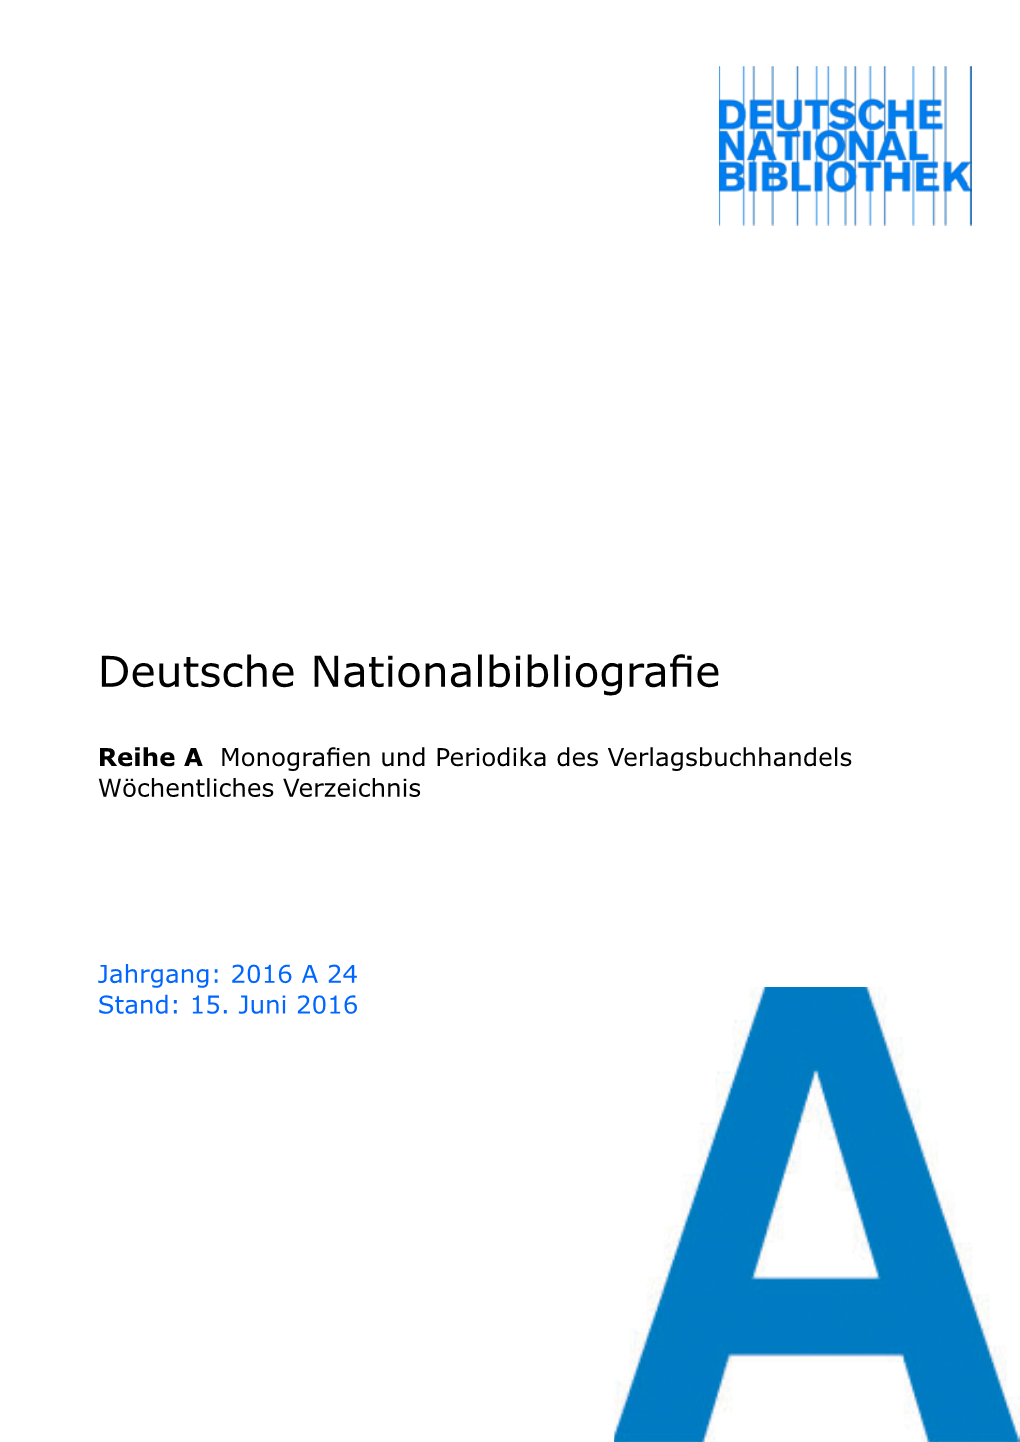 Deutsche Nationalbibliografie 2016 a 24